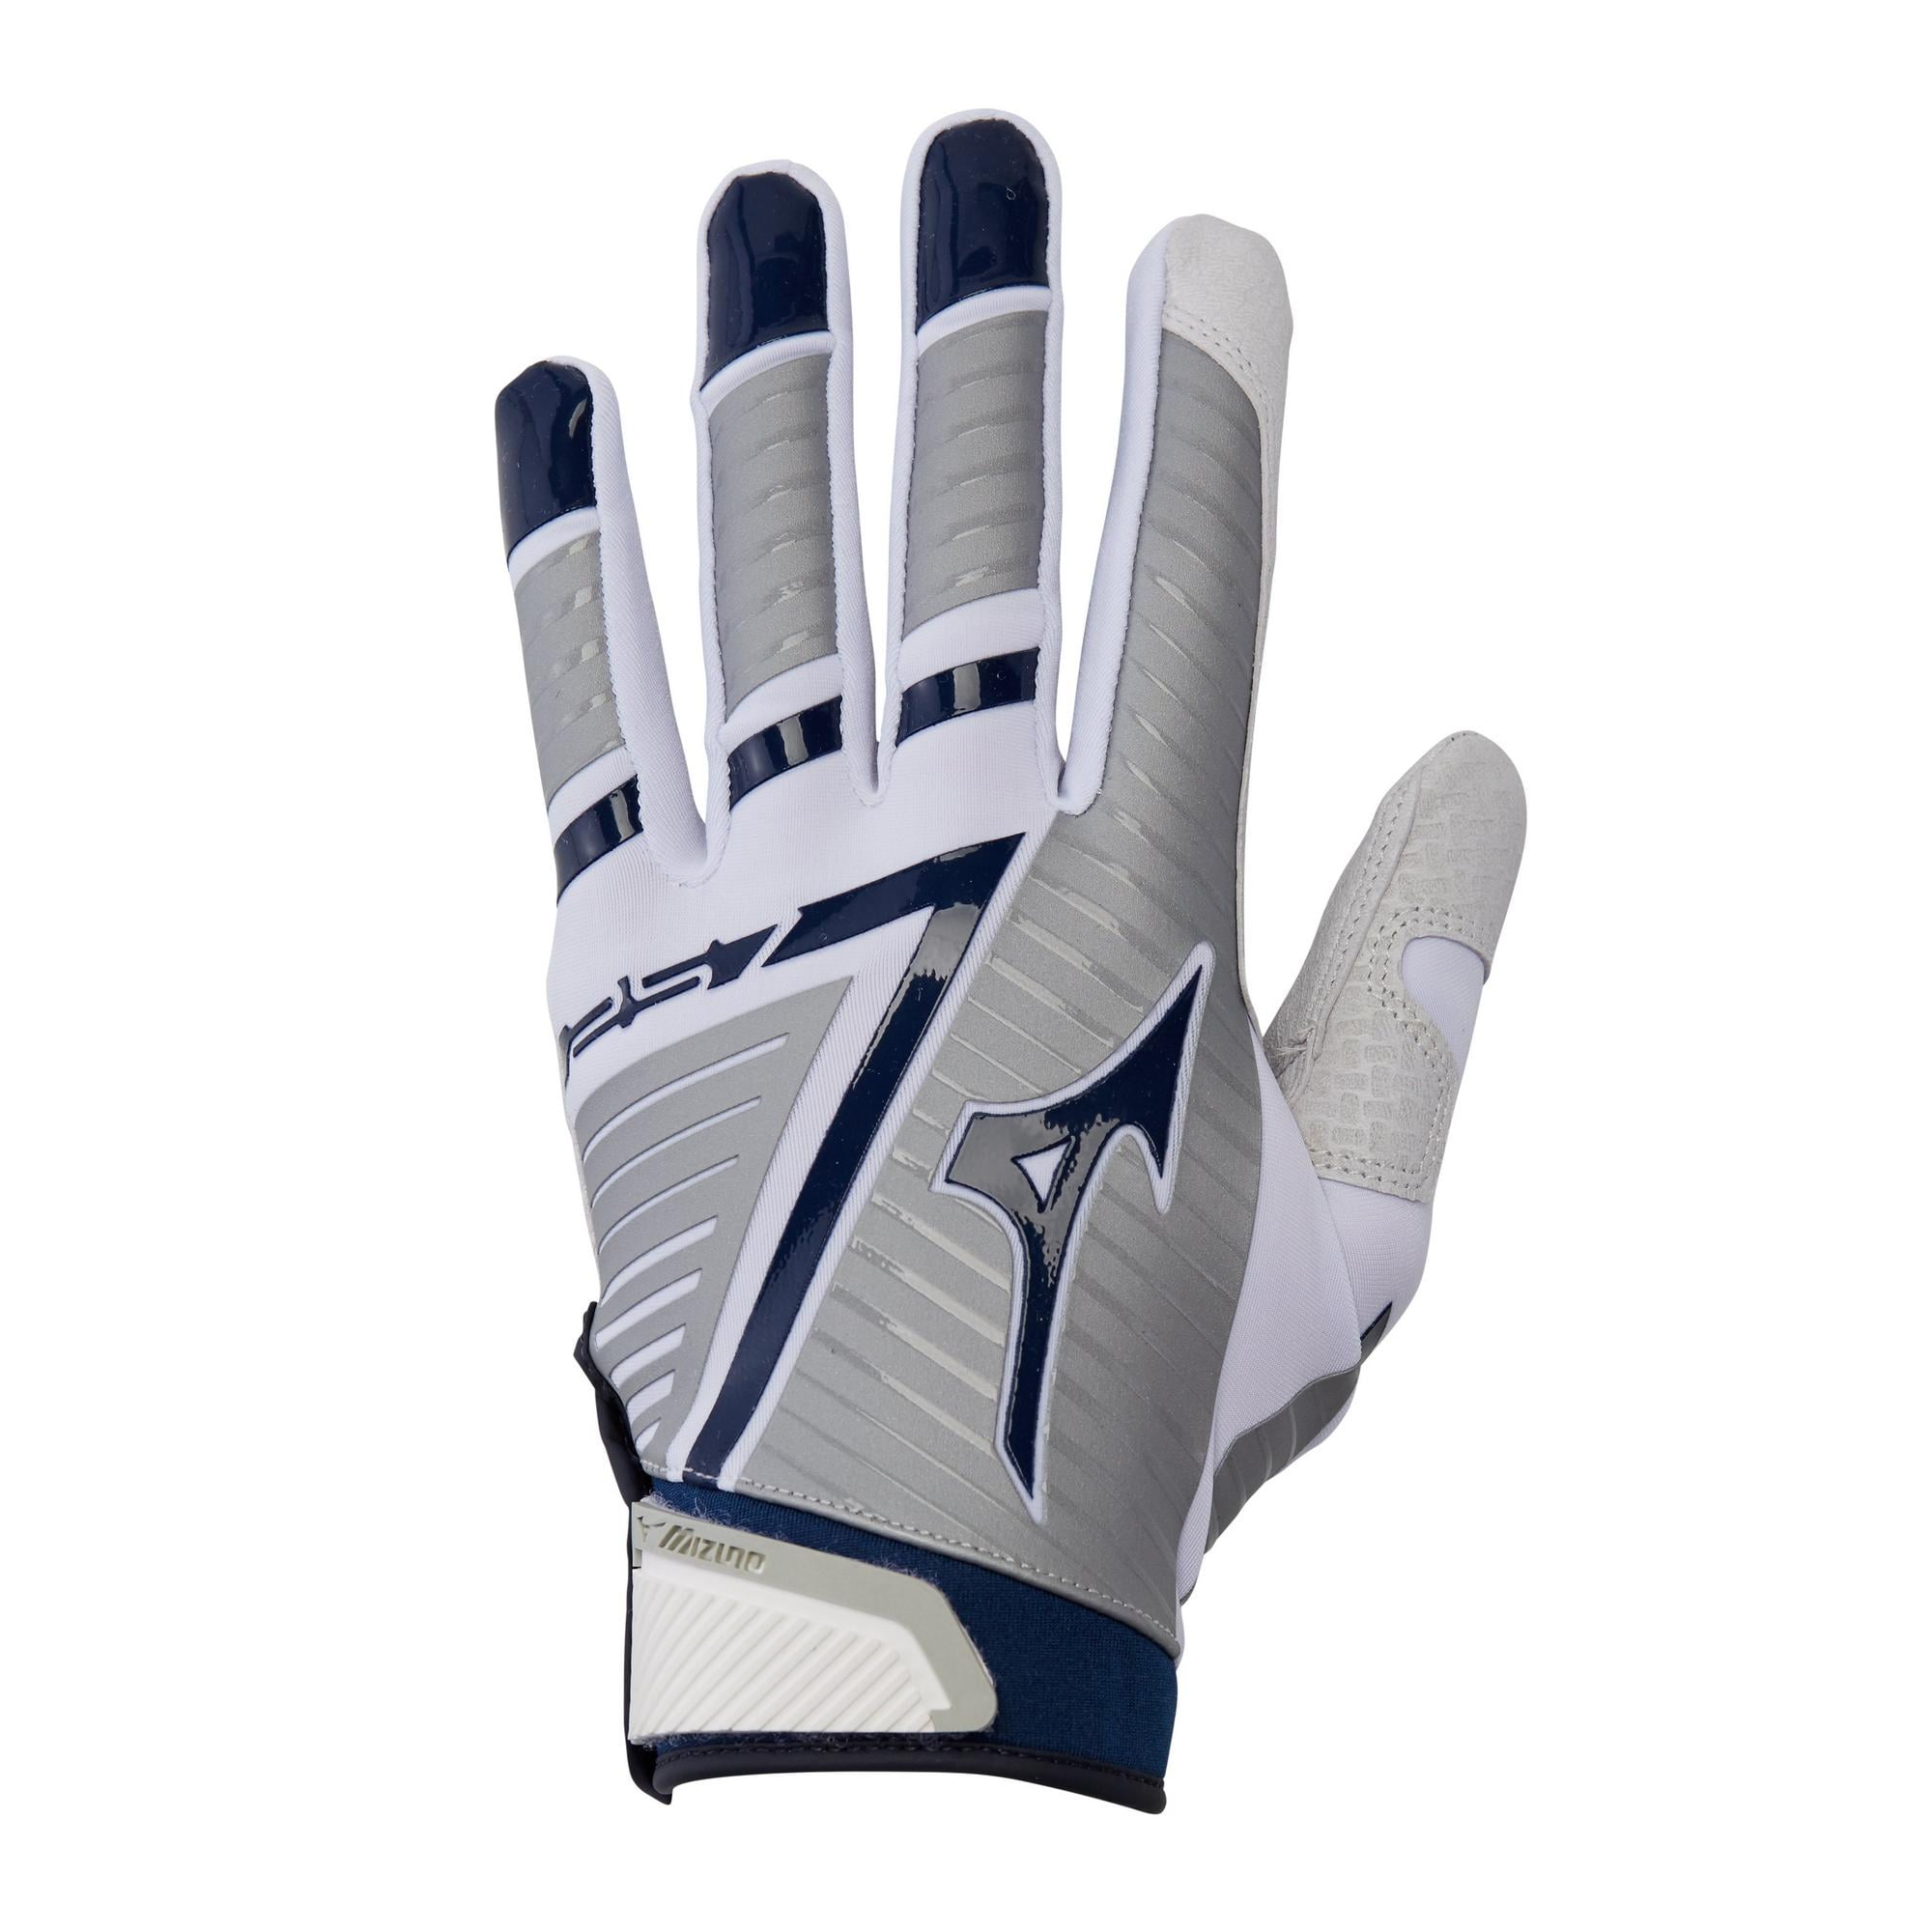 Mizuno Blue 303 Batting Gloves NWT Size Large 